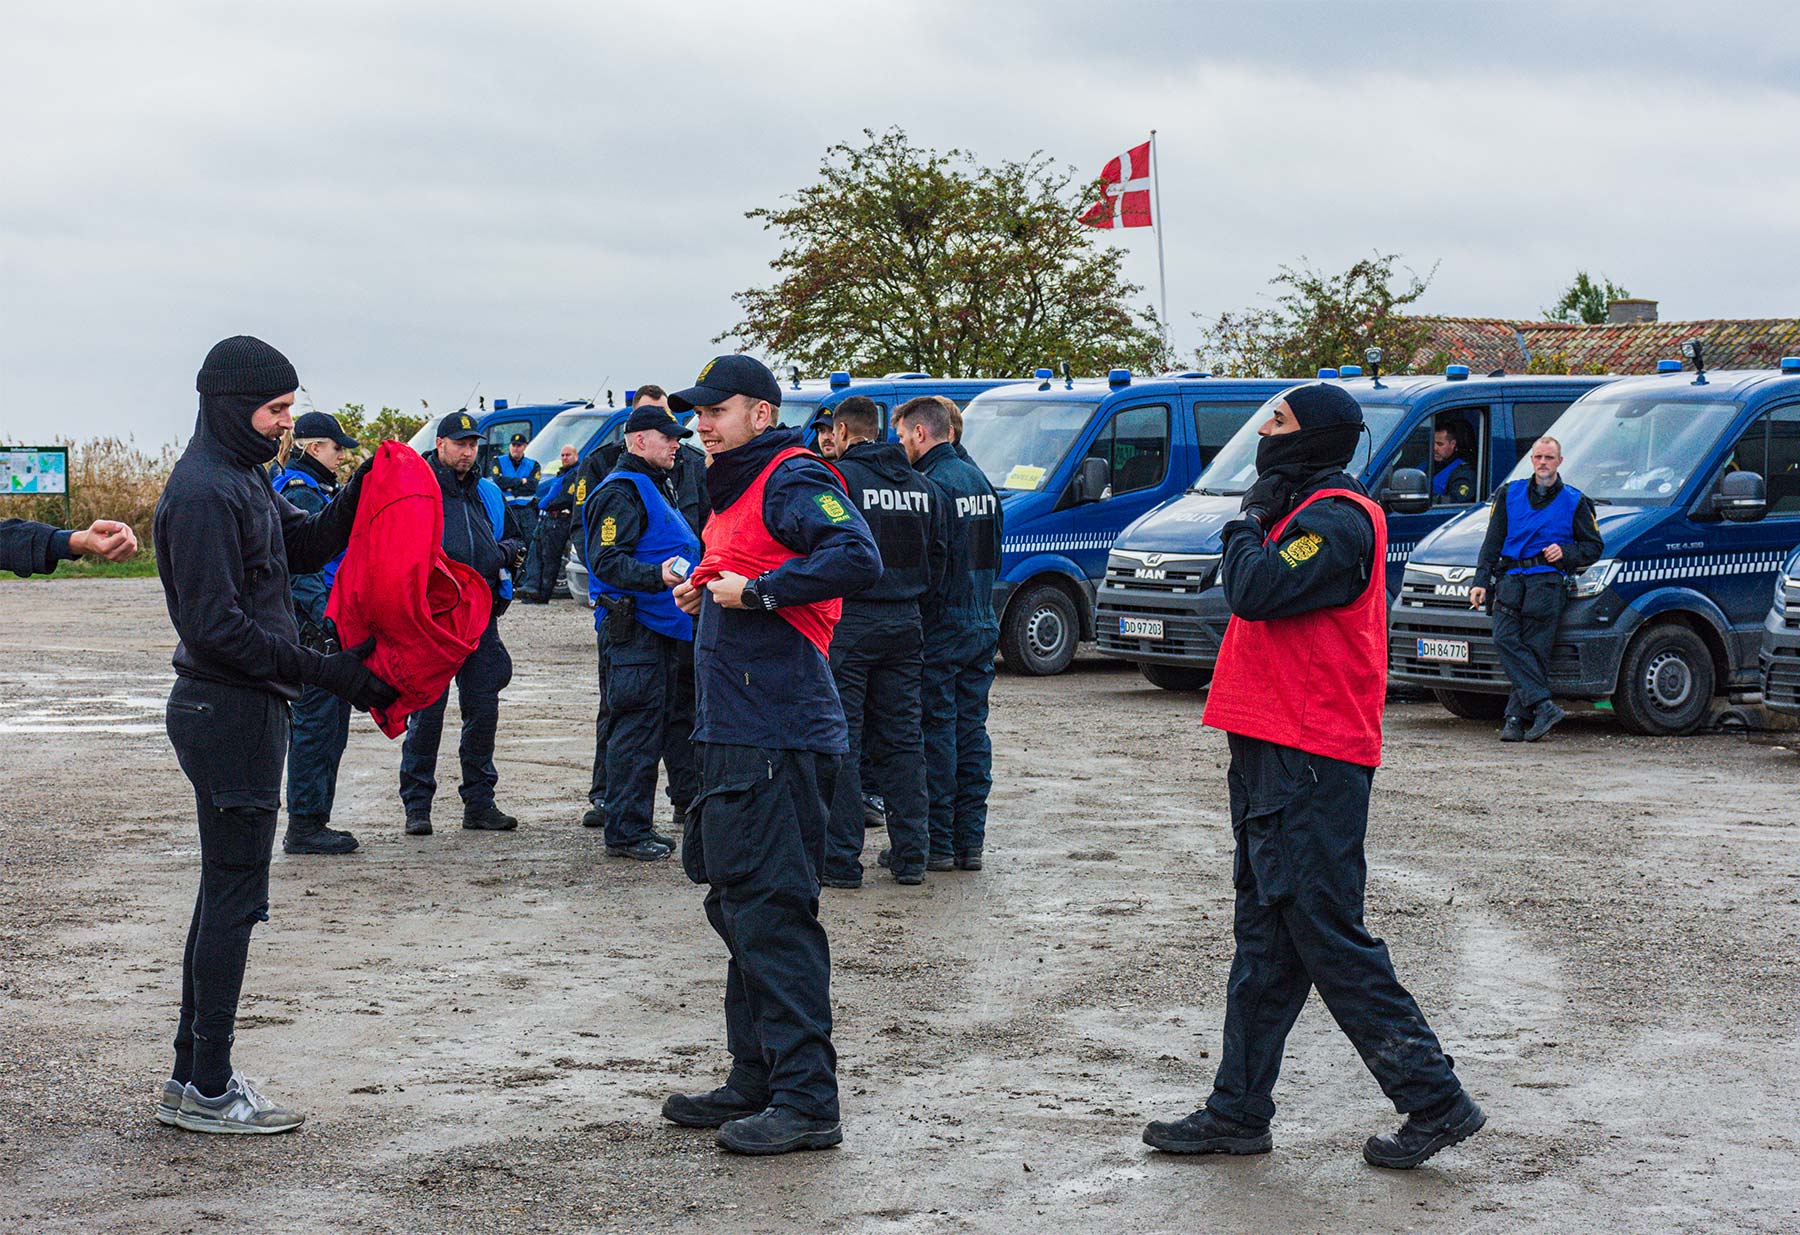 Betjente ifører sig de røde veste for at vise, at de er demonstranter. Foto: hans Jacob Sørensen.